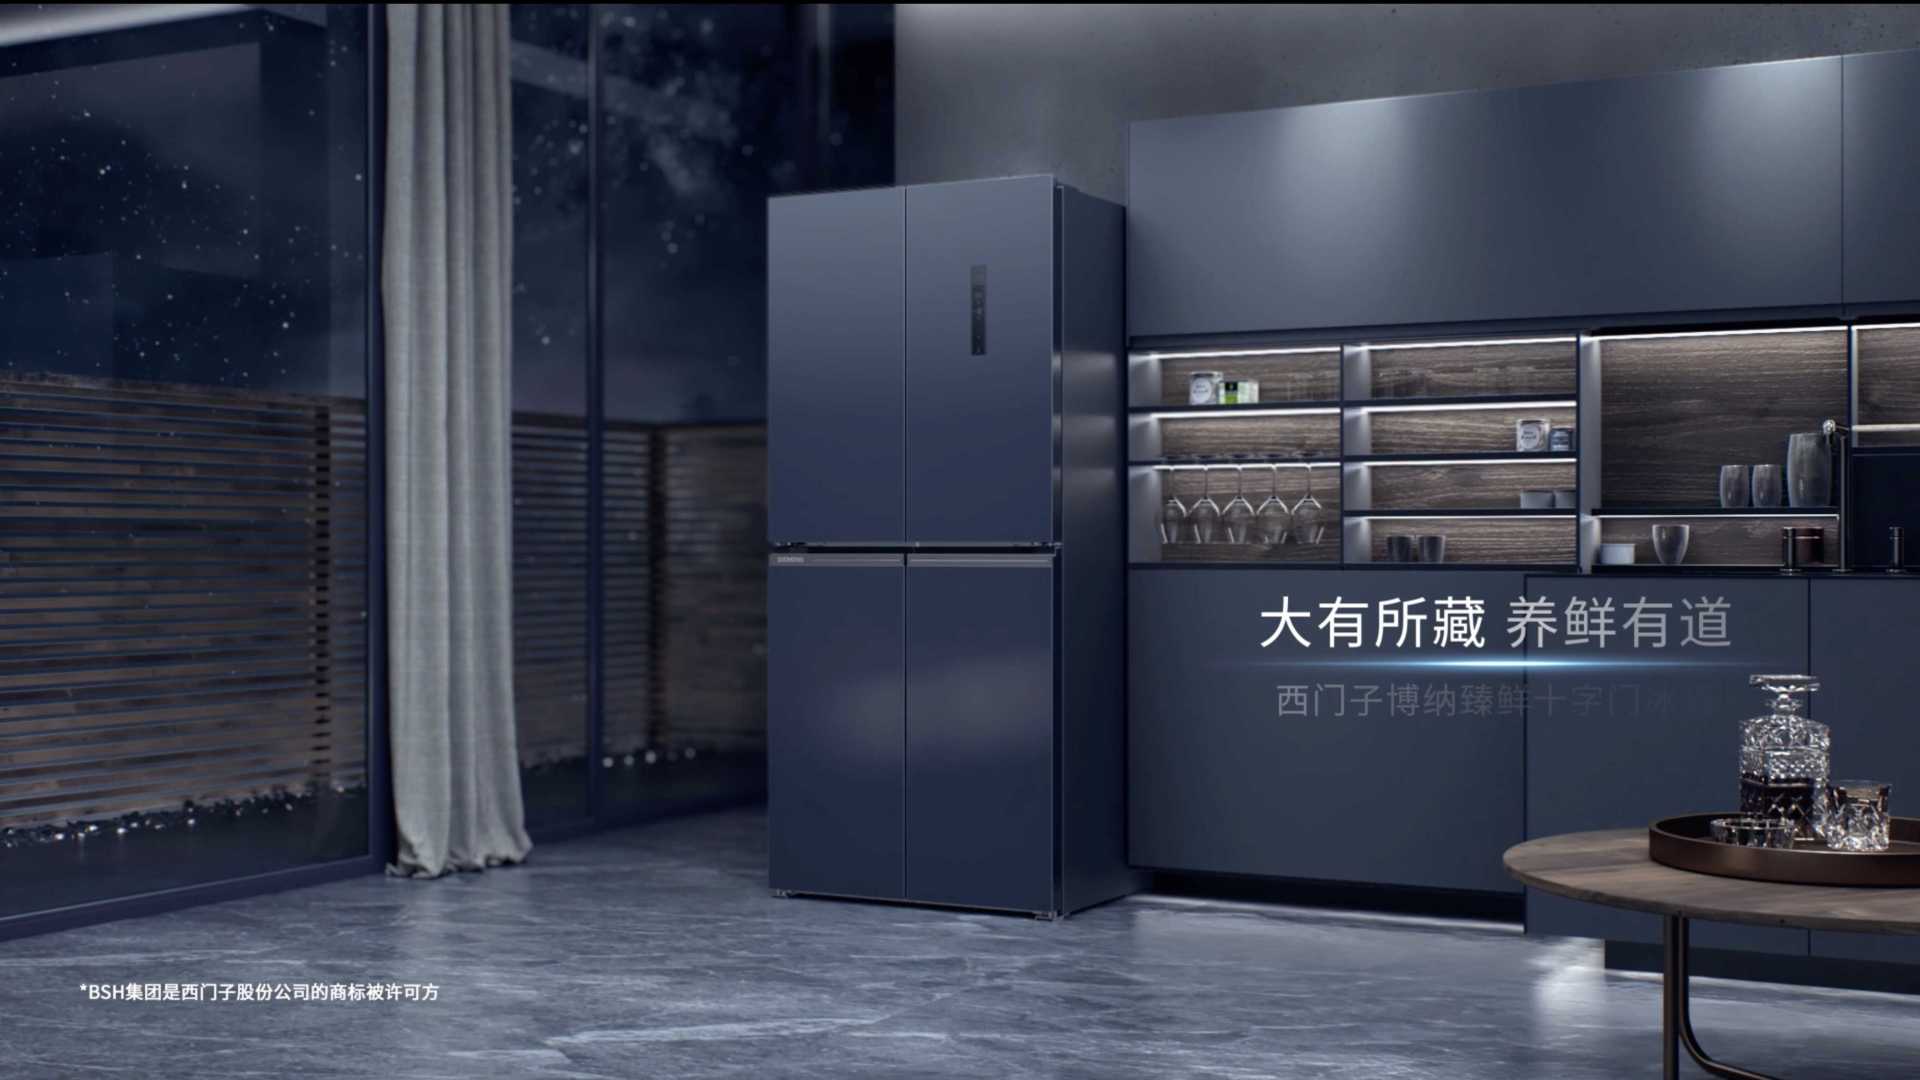 高端冰箱产品视频-十字门版